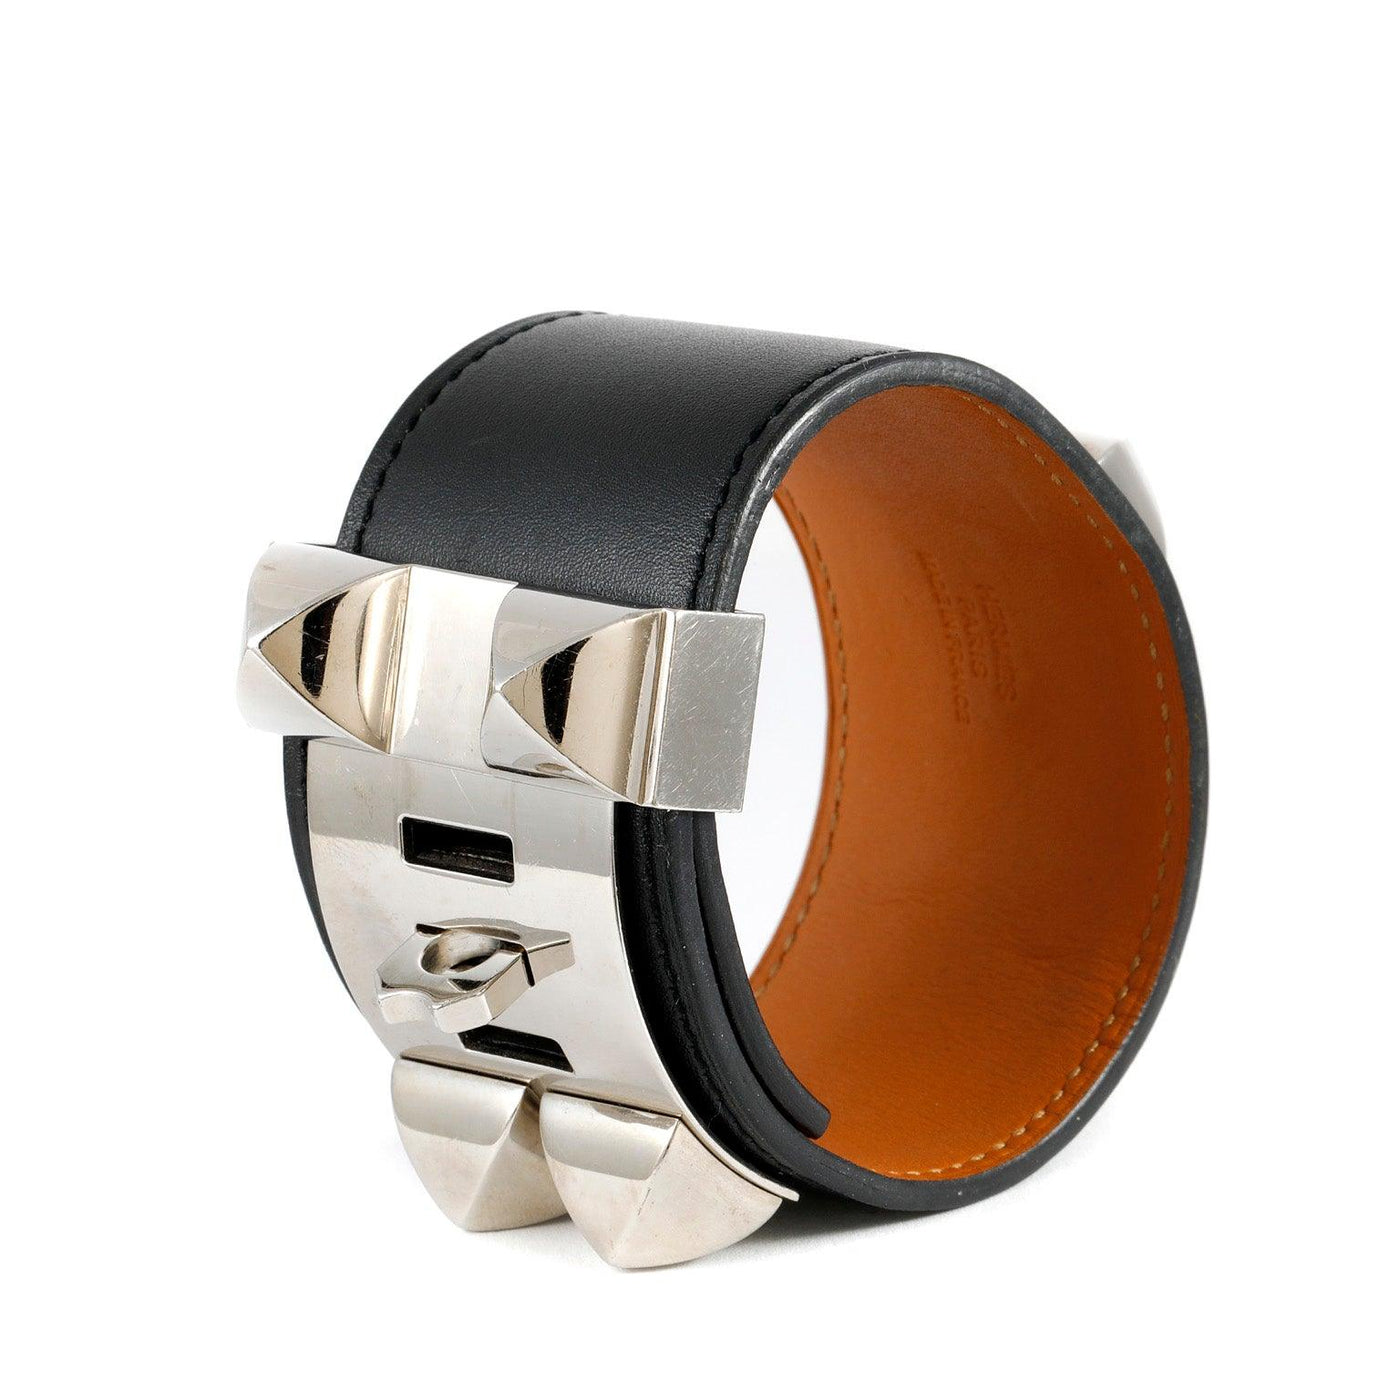 Hermès Black Leather Collier de Chien Bracelet Cuff - Only Authentics